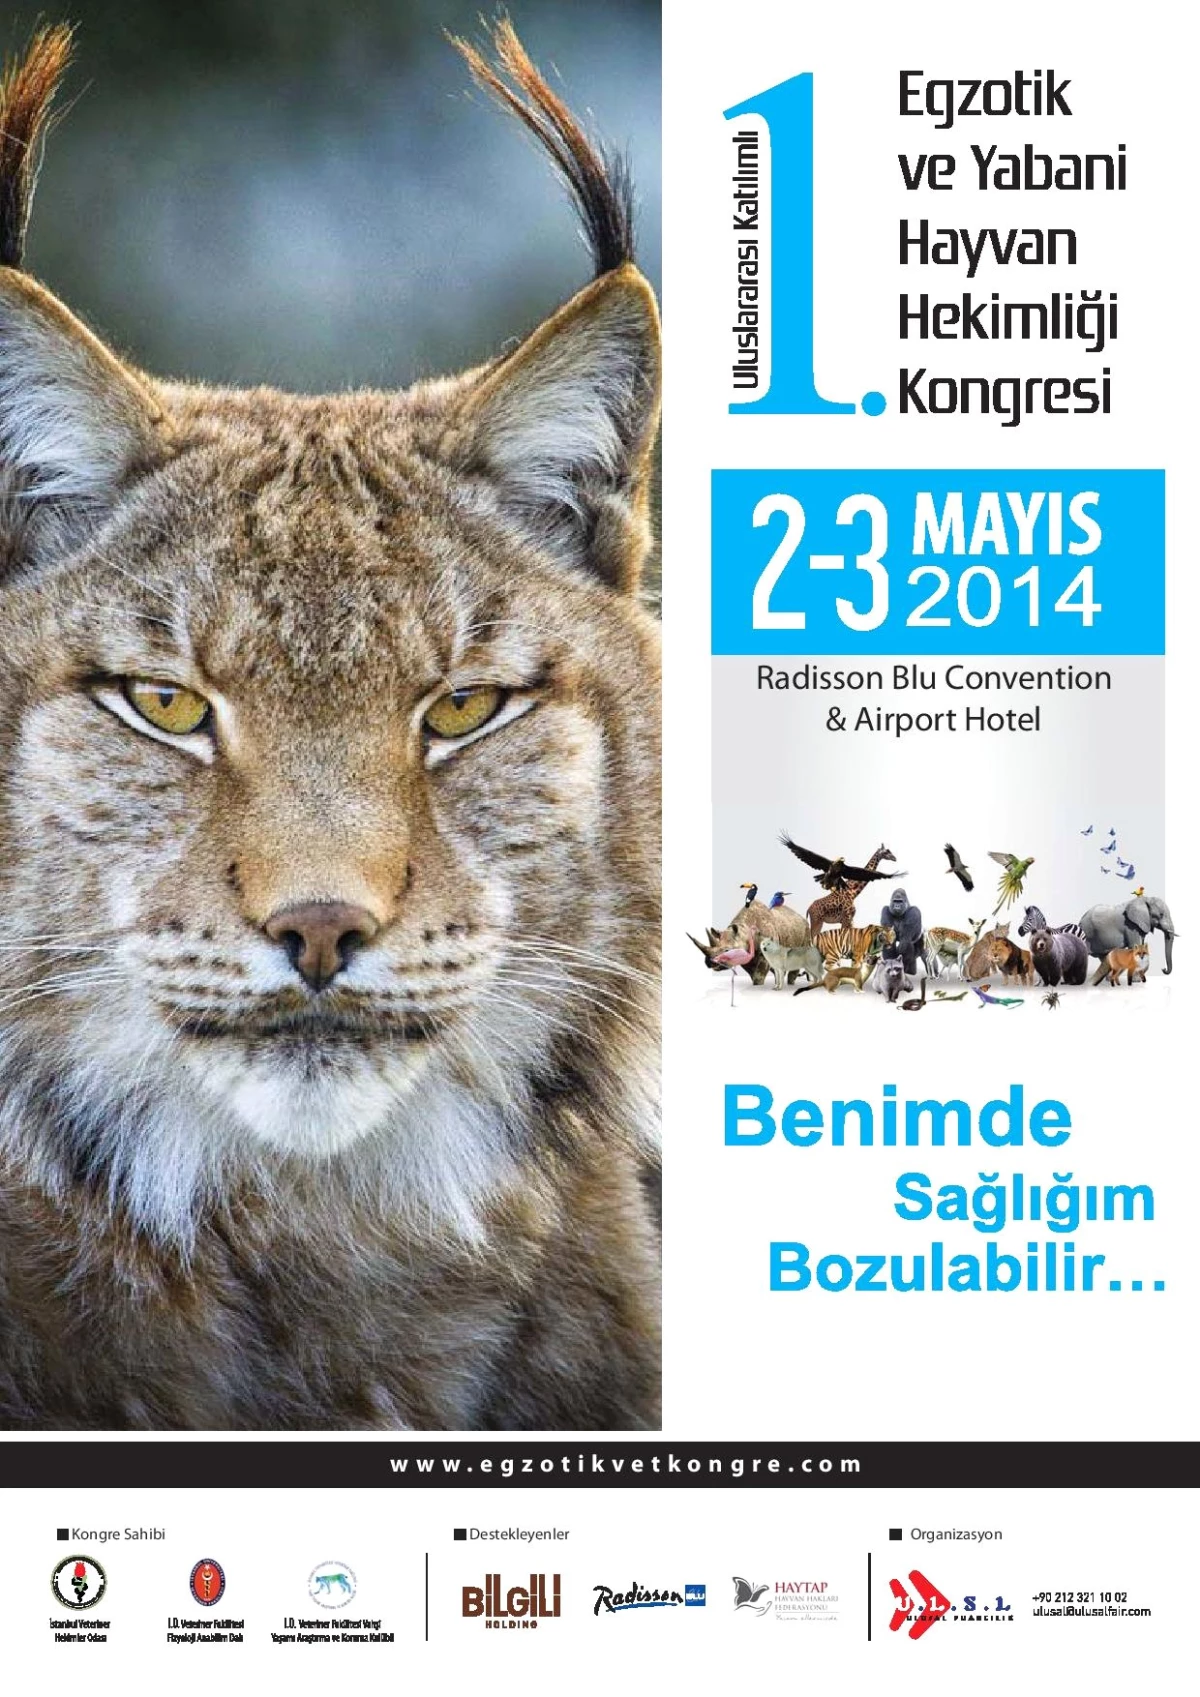 Egzotik ve Yabani Hayvan Sağlığı Konusunda Bilim Adamları 2 Mayıs\'ta İstanbul\'da